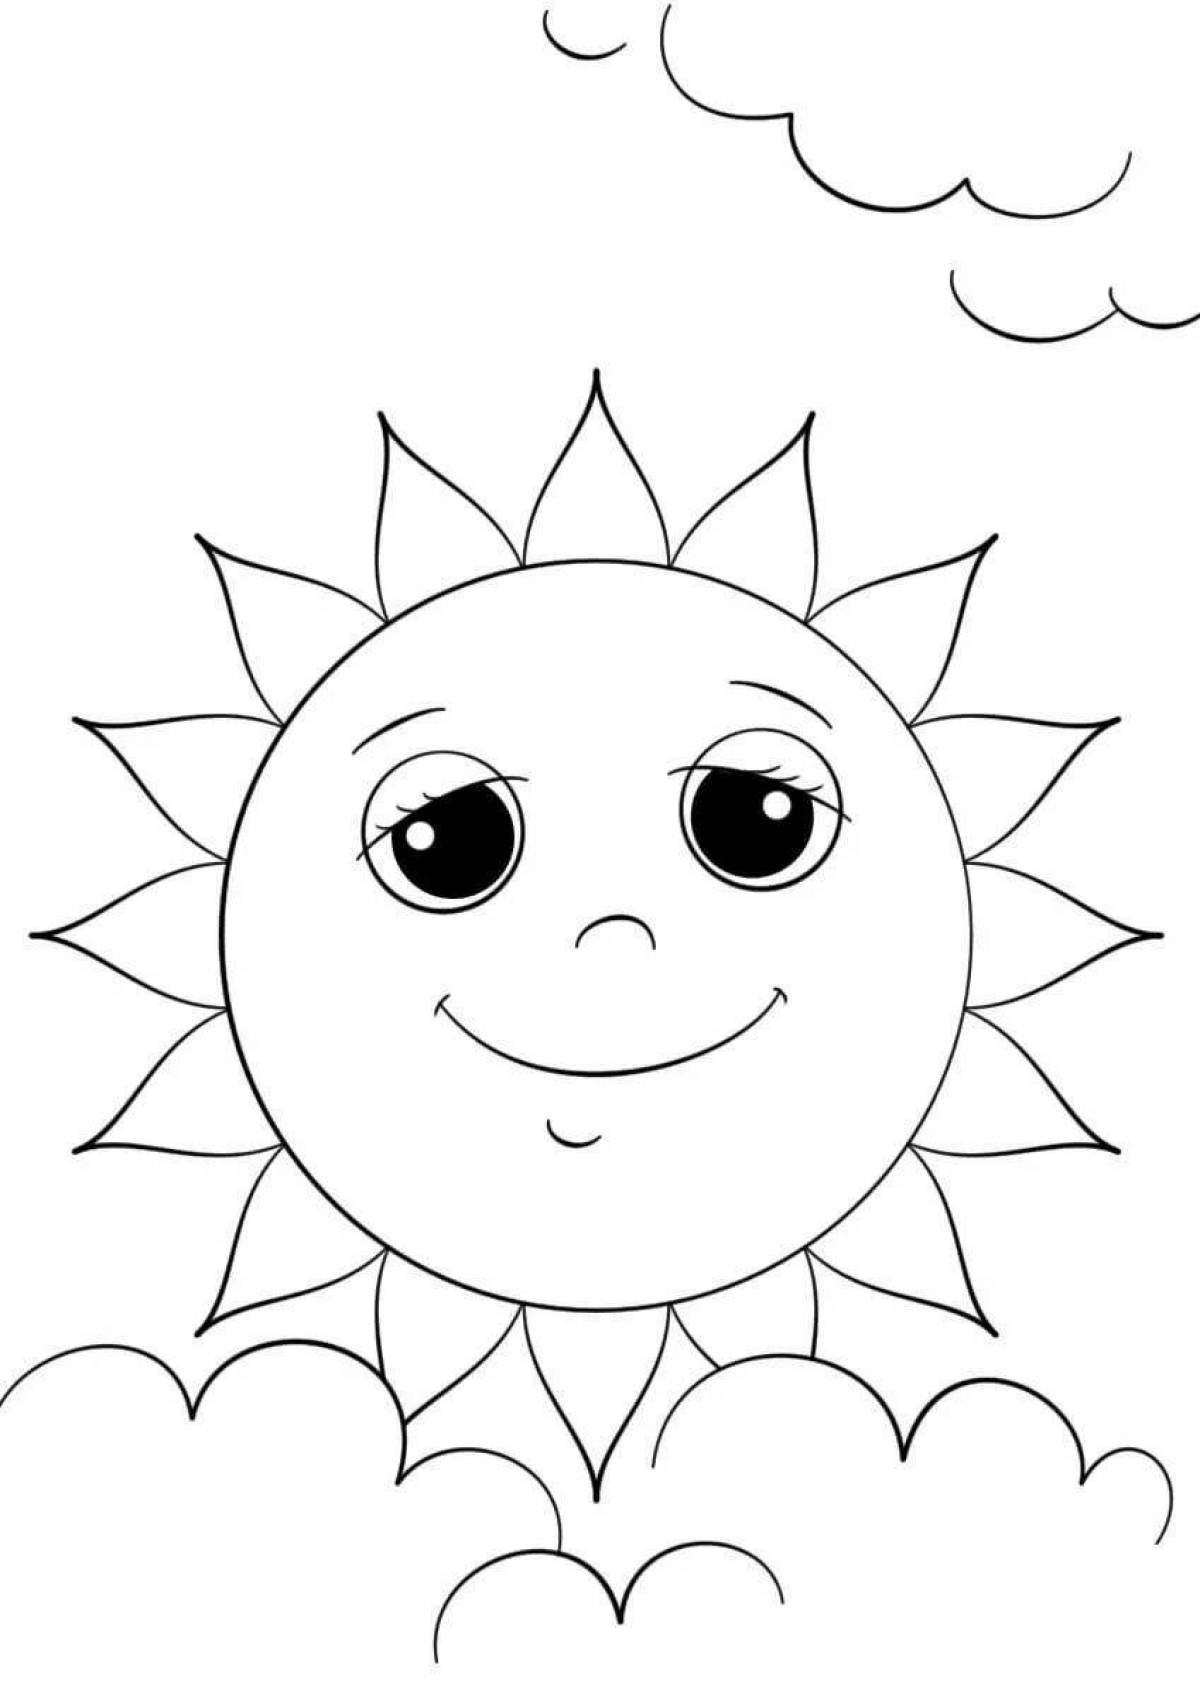 Лучезарная раскраска страницы изображение солнца